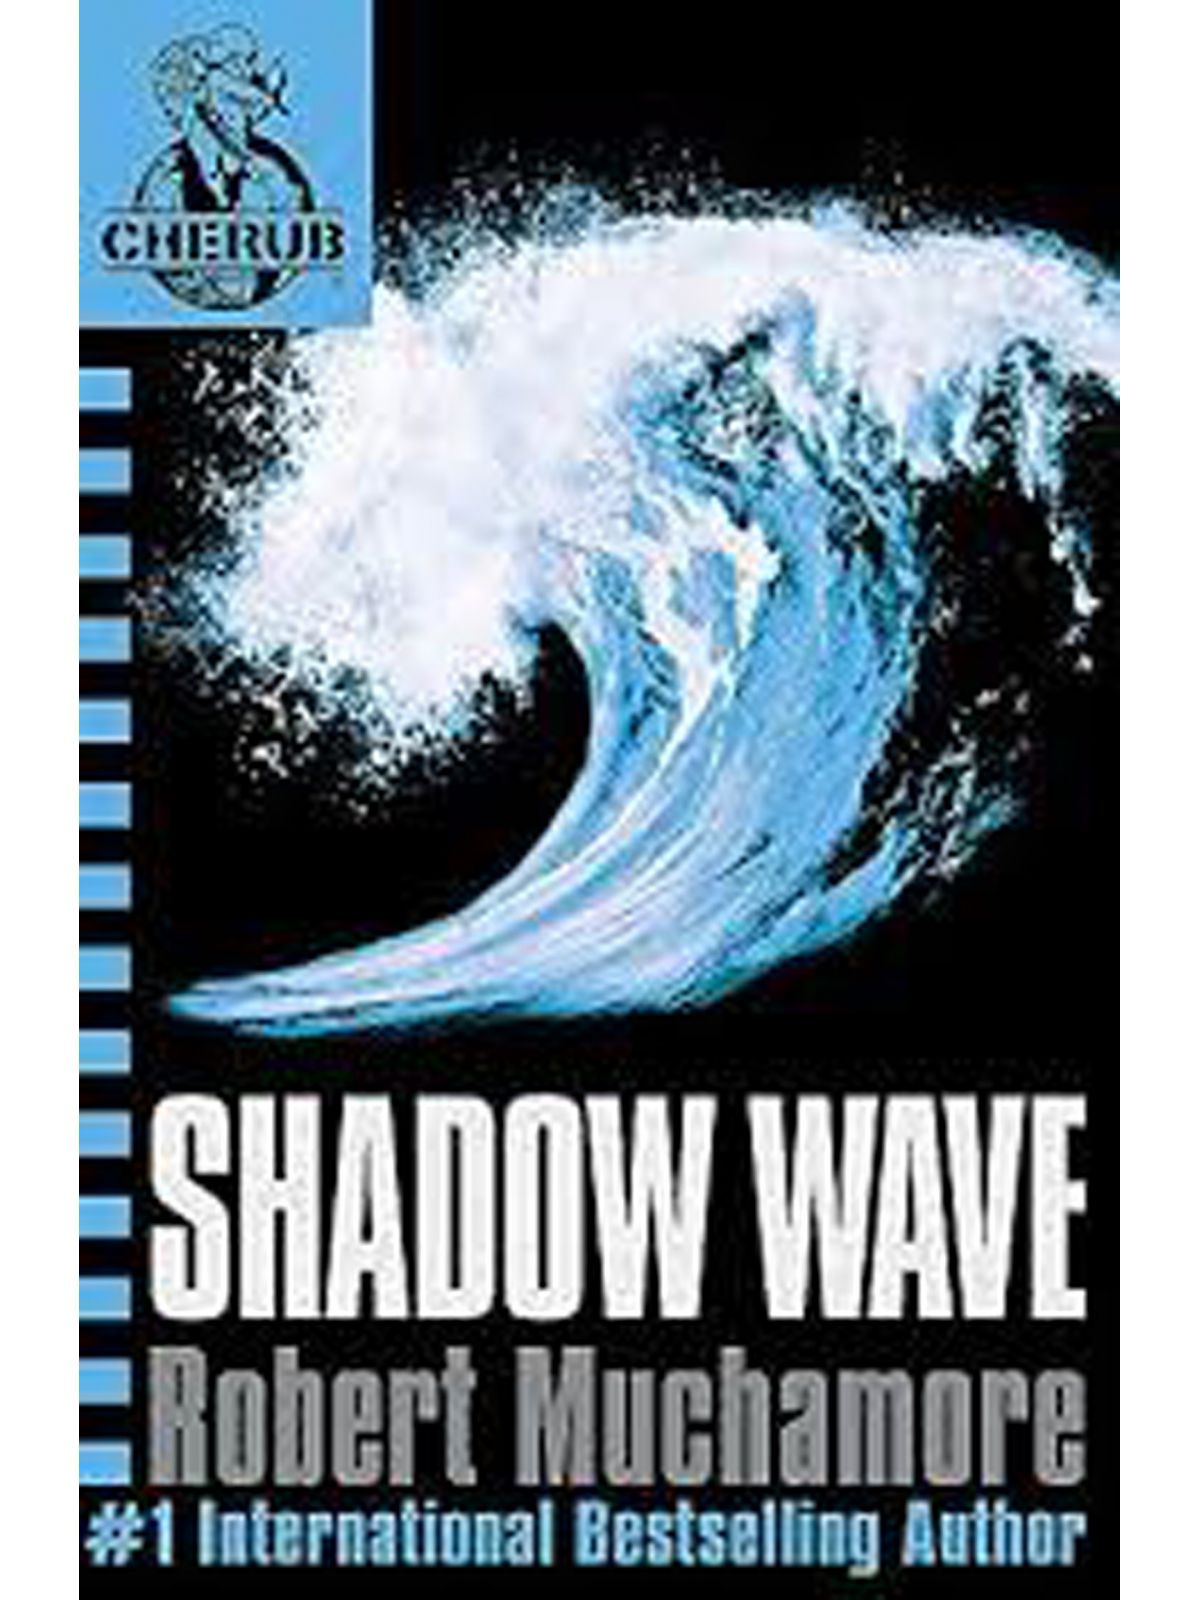 CHERUB / SHADOW WAVE